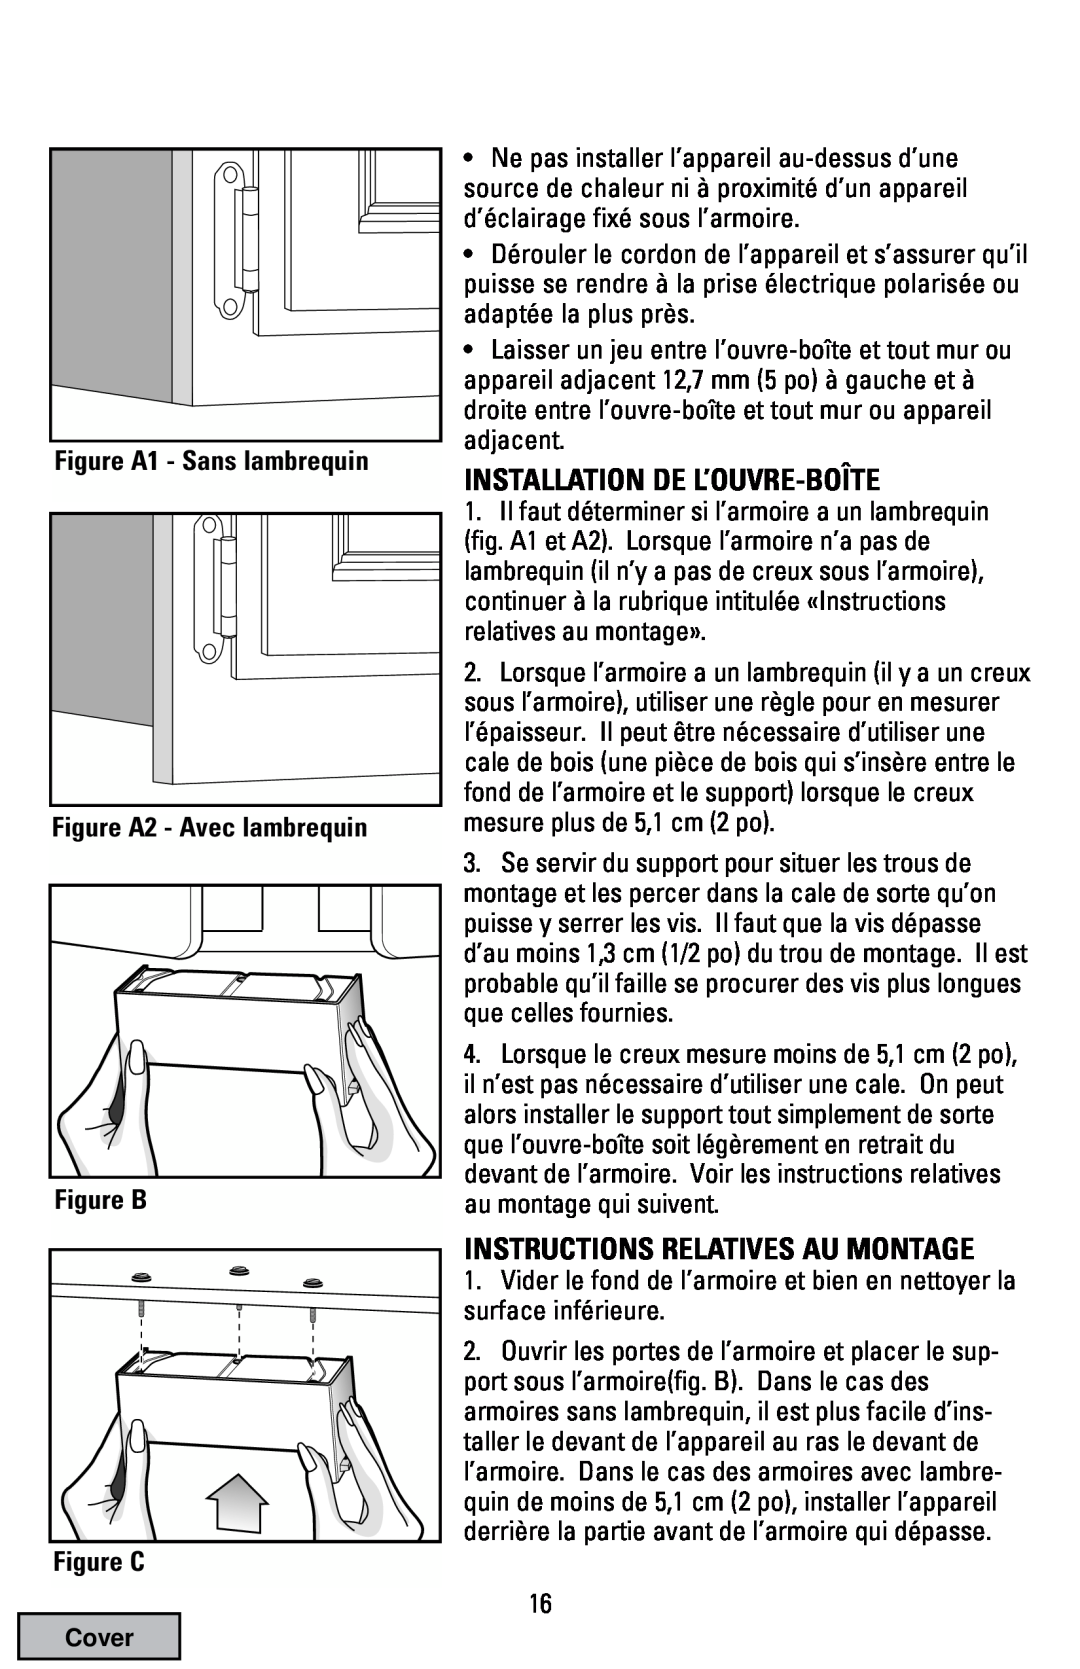 Black & Decker EC70 manual Installation De L’Ouvre-Boîte, Instructions Relatives Au Montage, Figure C 